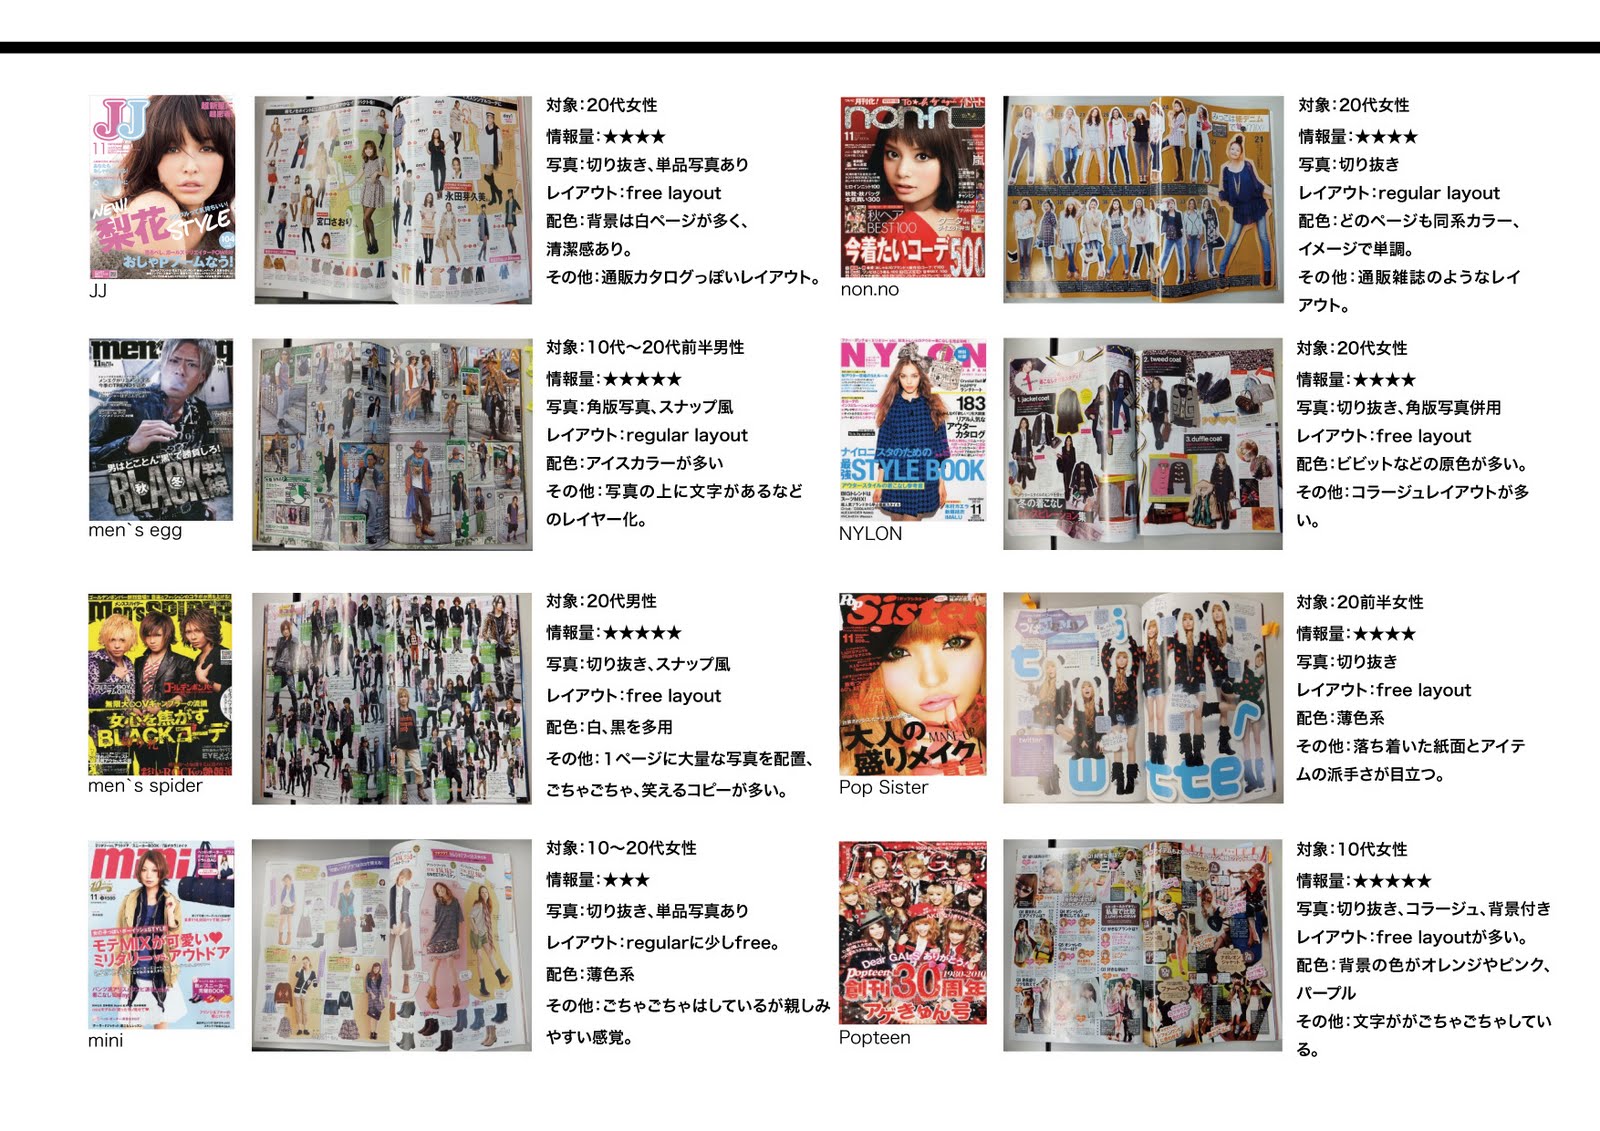 渋谷からはじまる ファッション雑誌のレイアウト分析と比較